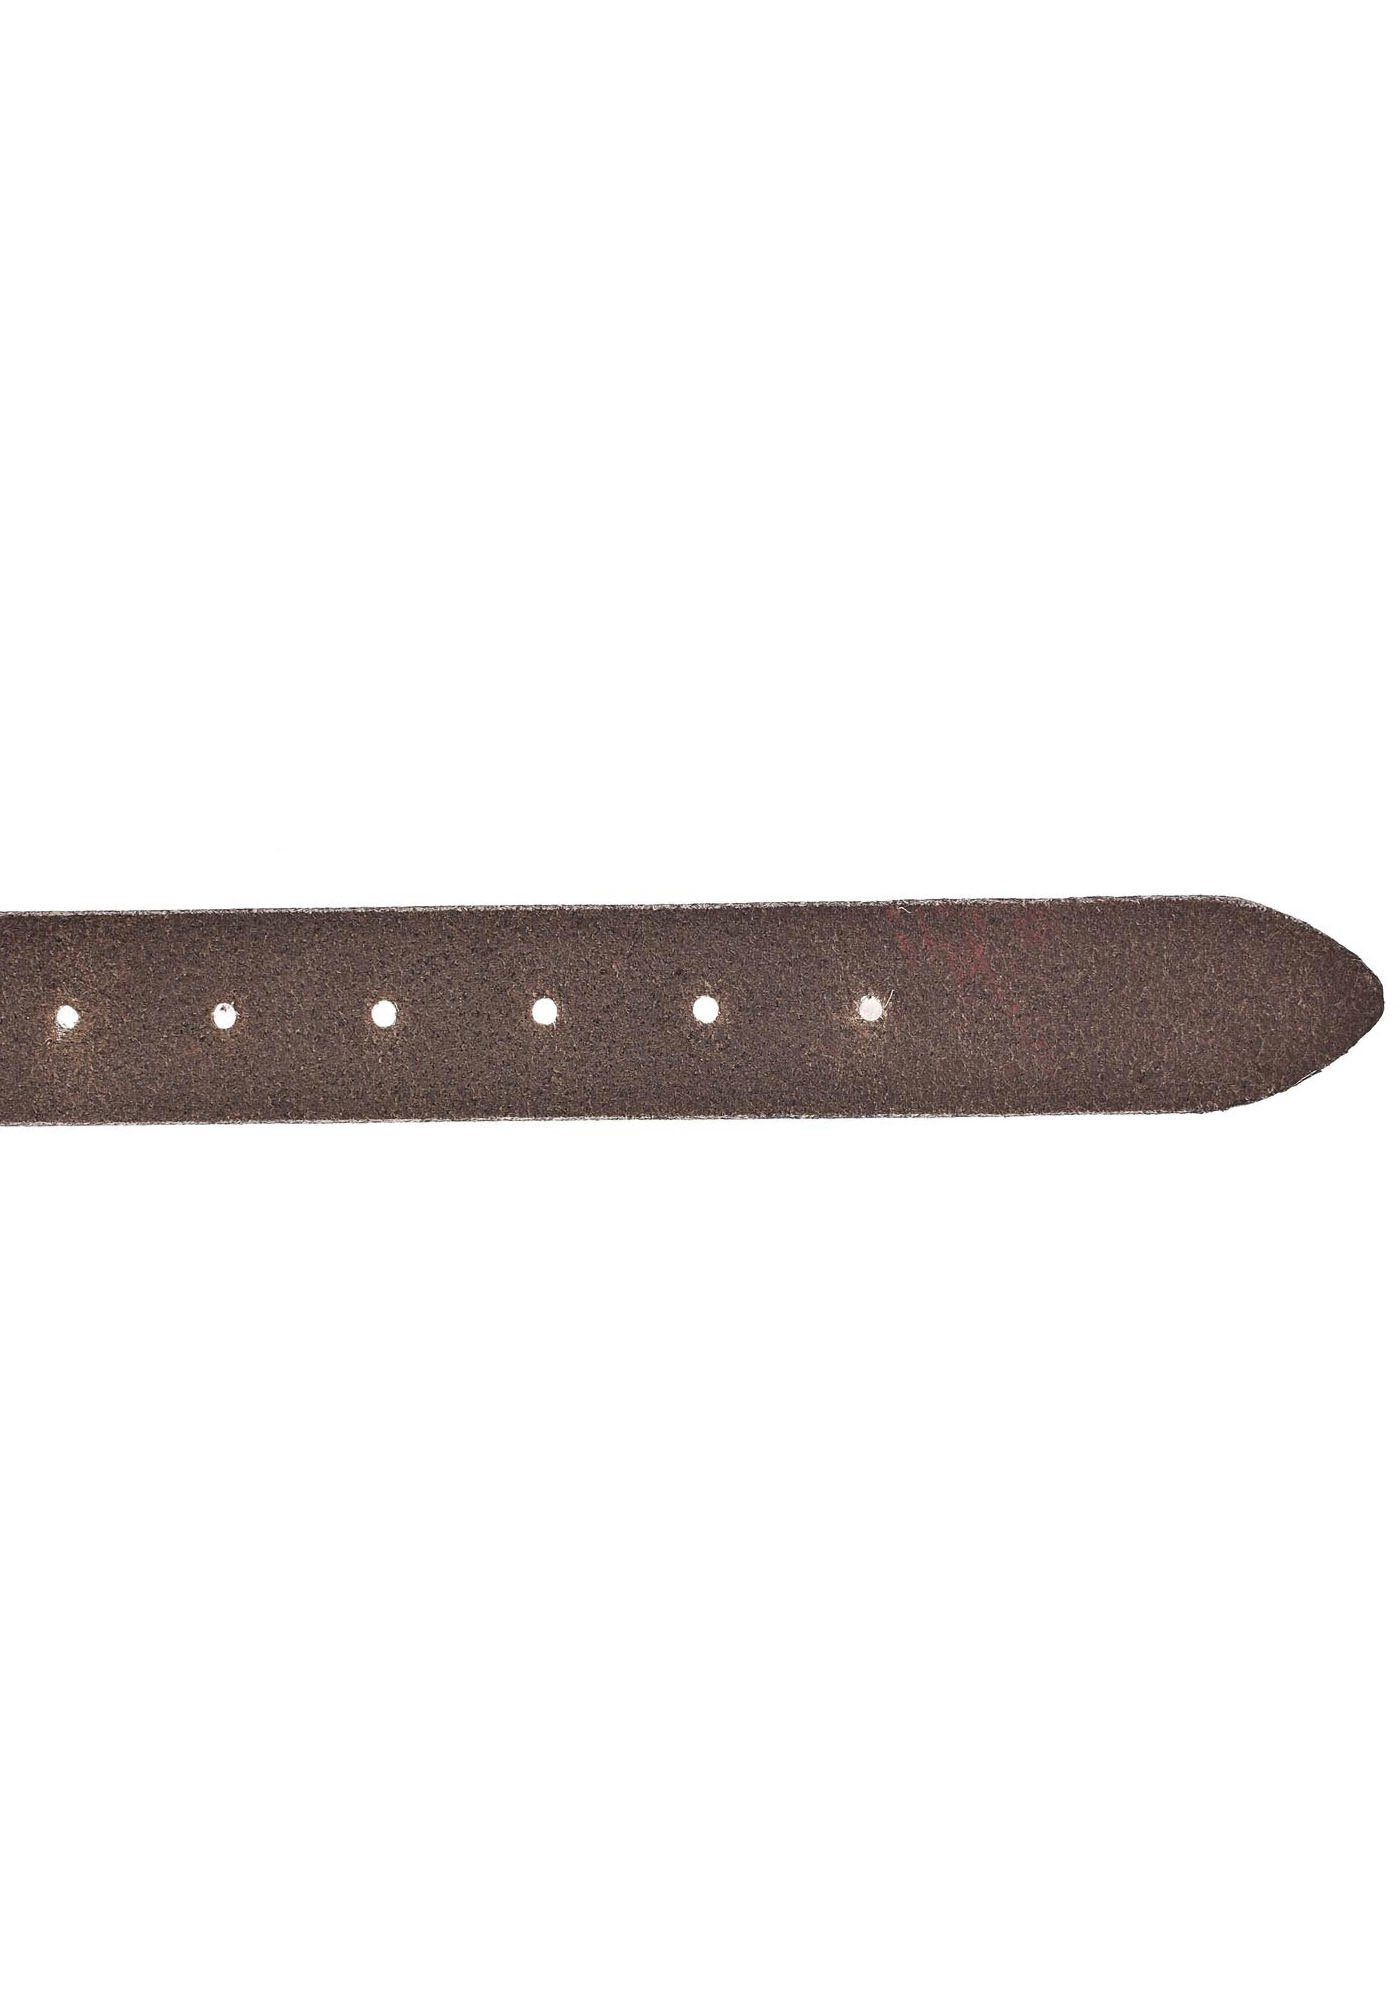 Farbbrillanz Ledergürtel hoher mit Vollrindleder Vanzetti taupe